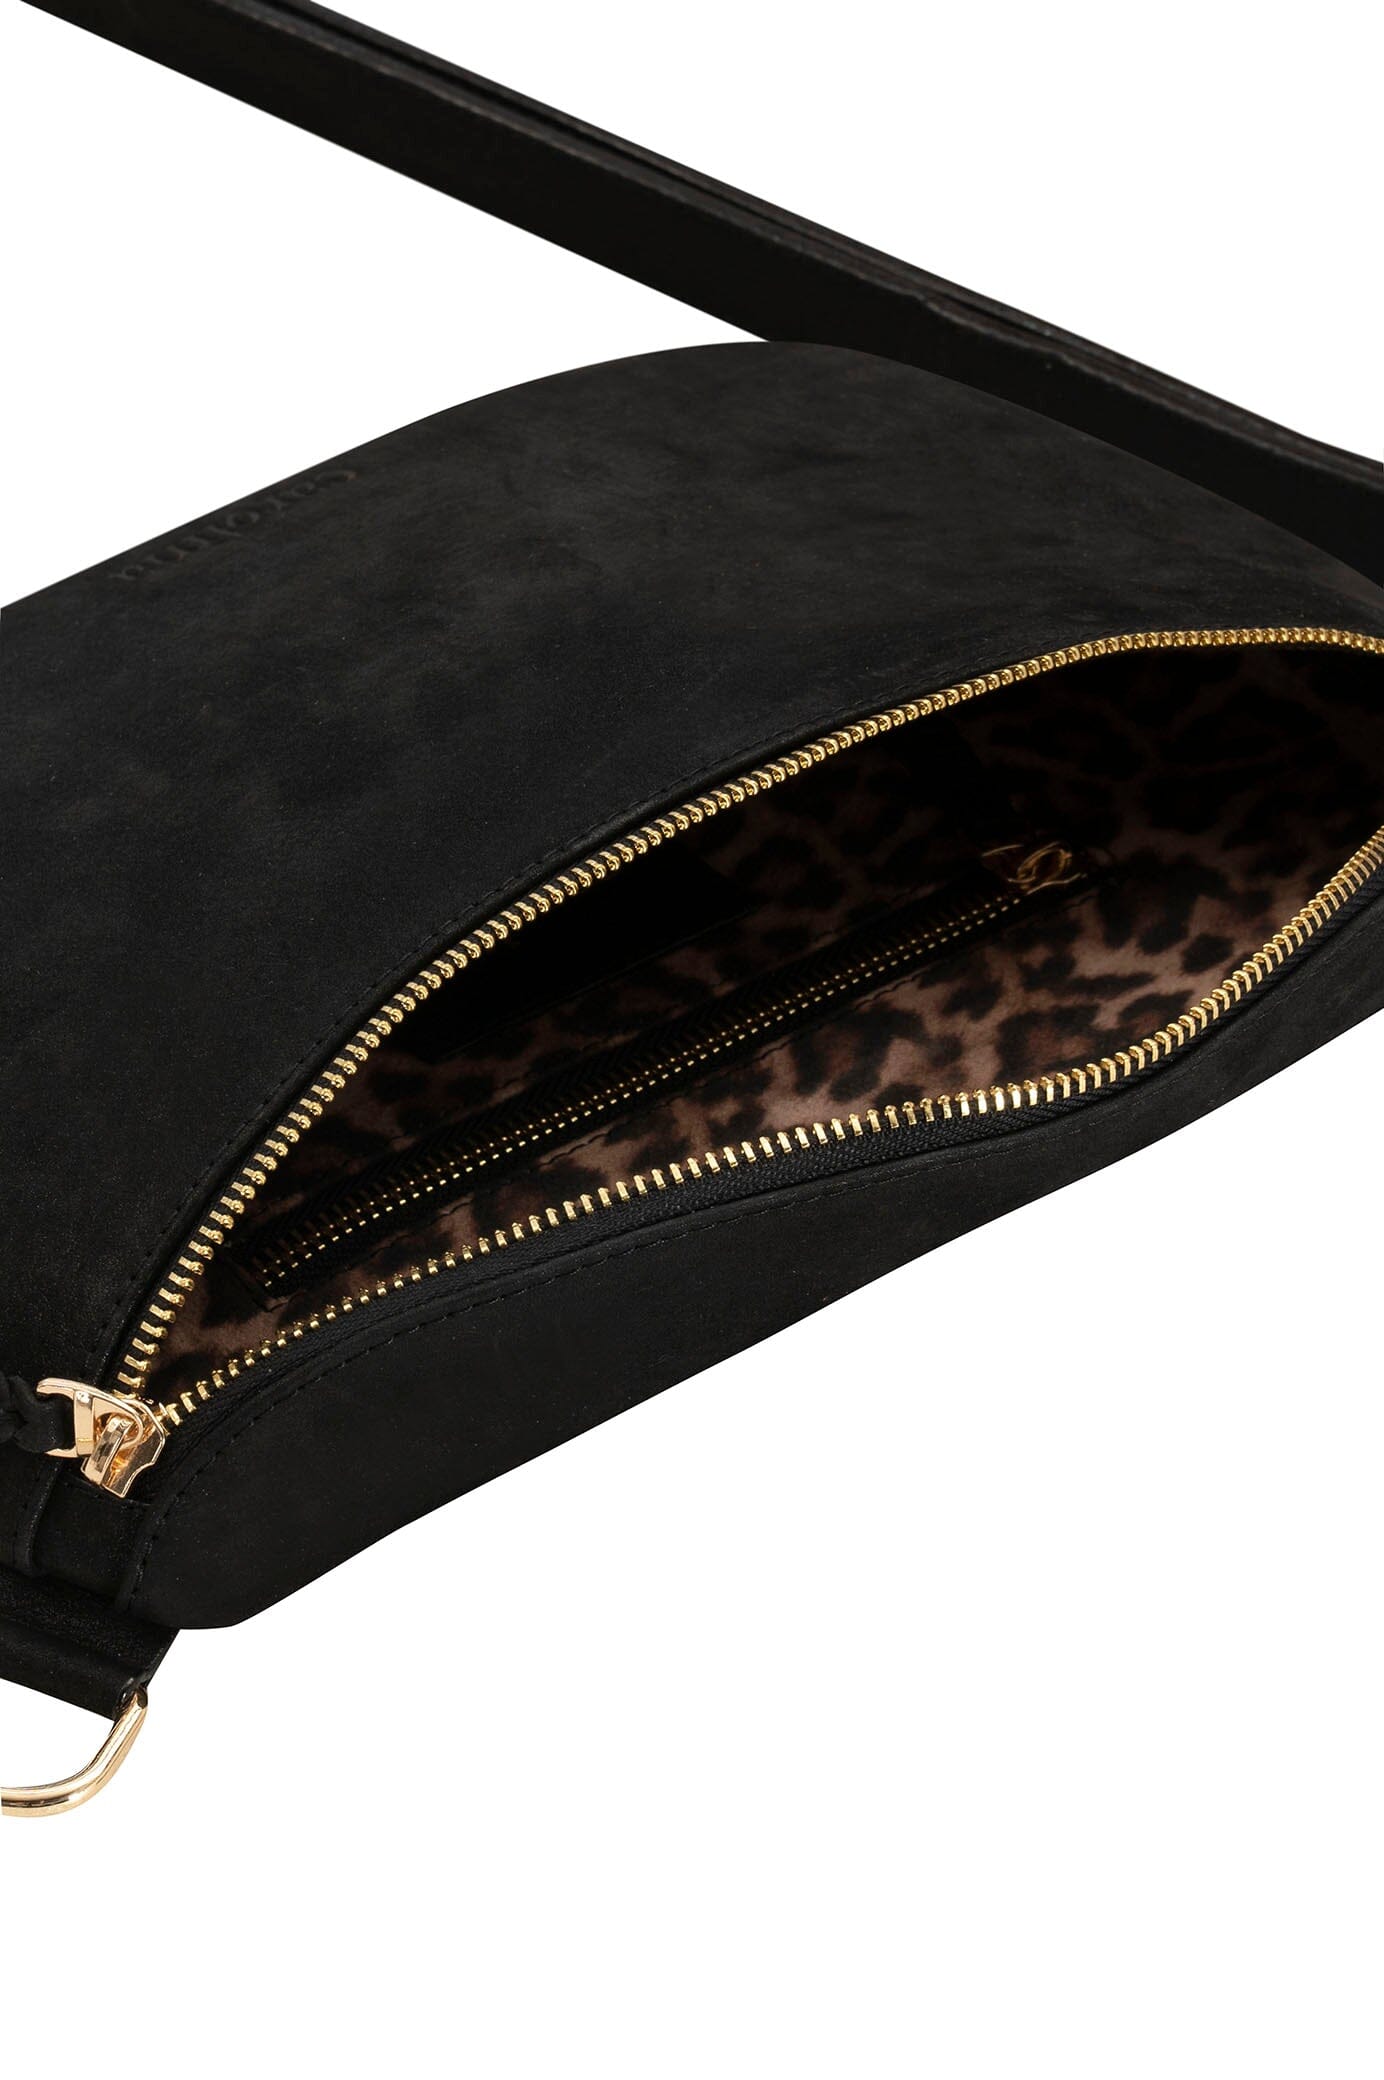 Ramona Leather Handbag Black Metallic Crossbody Bag